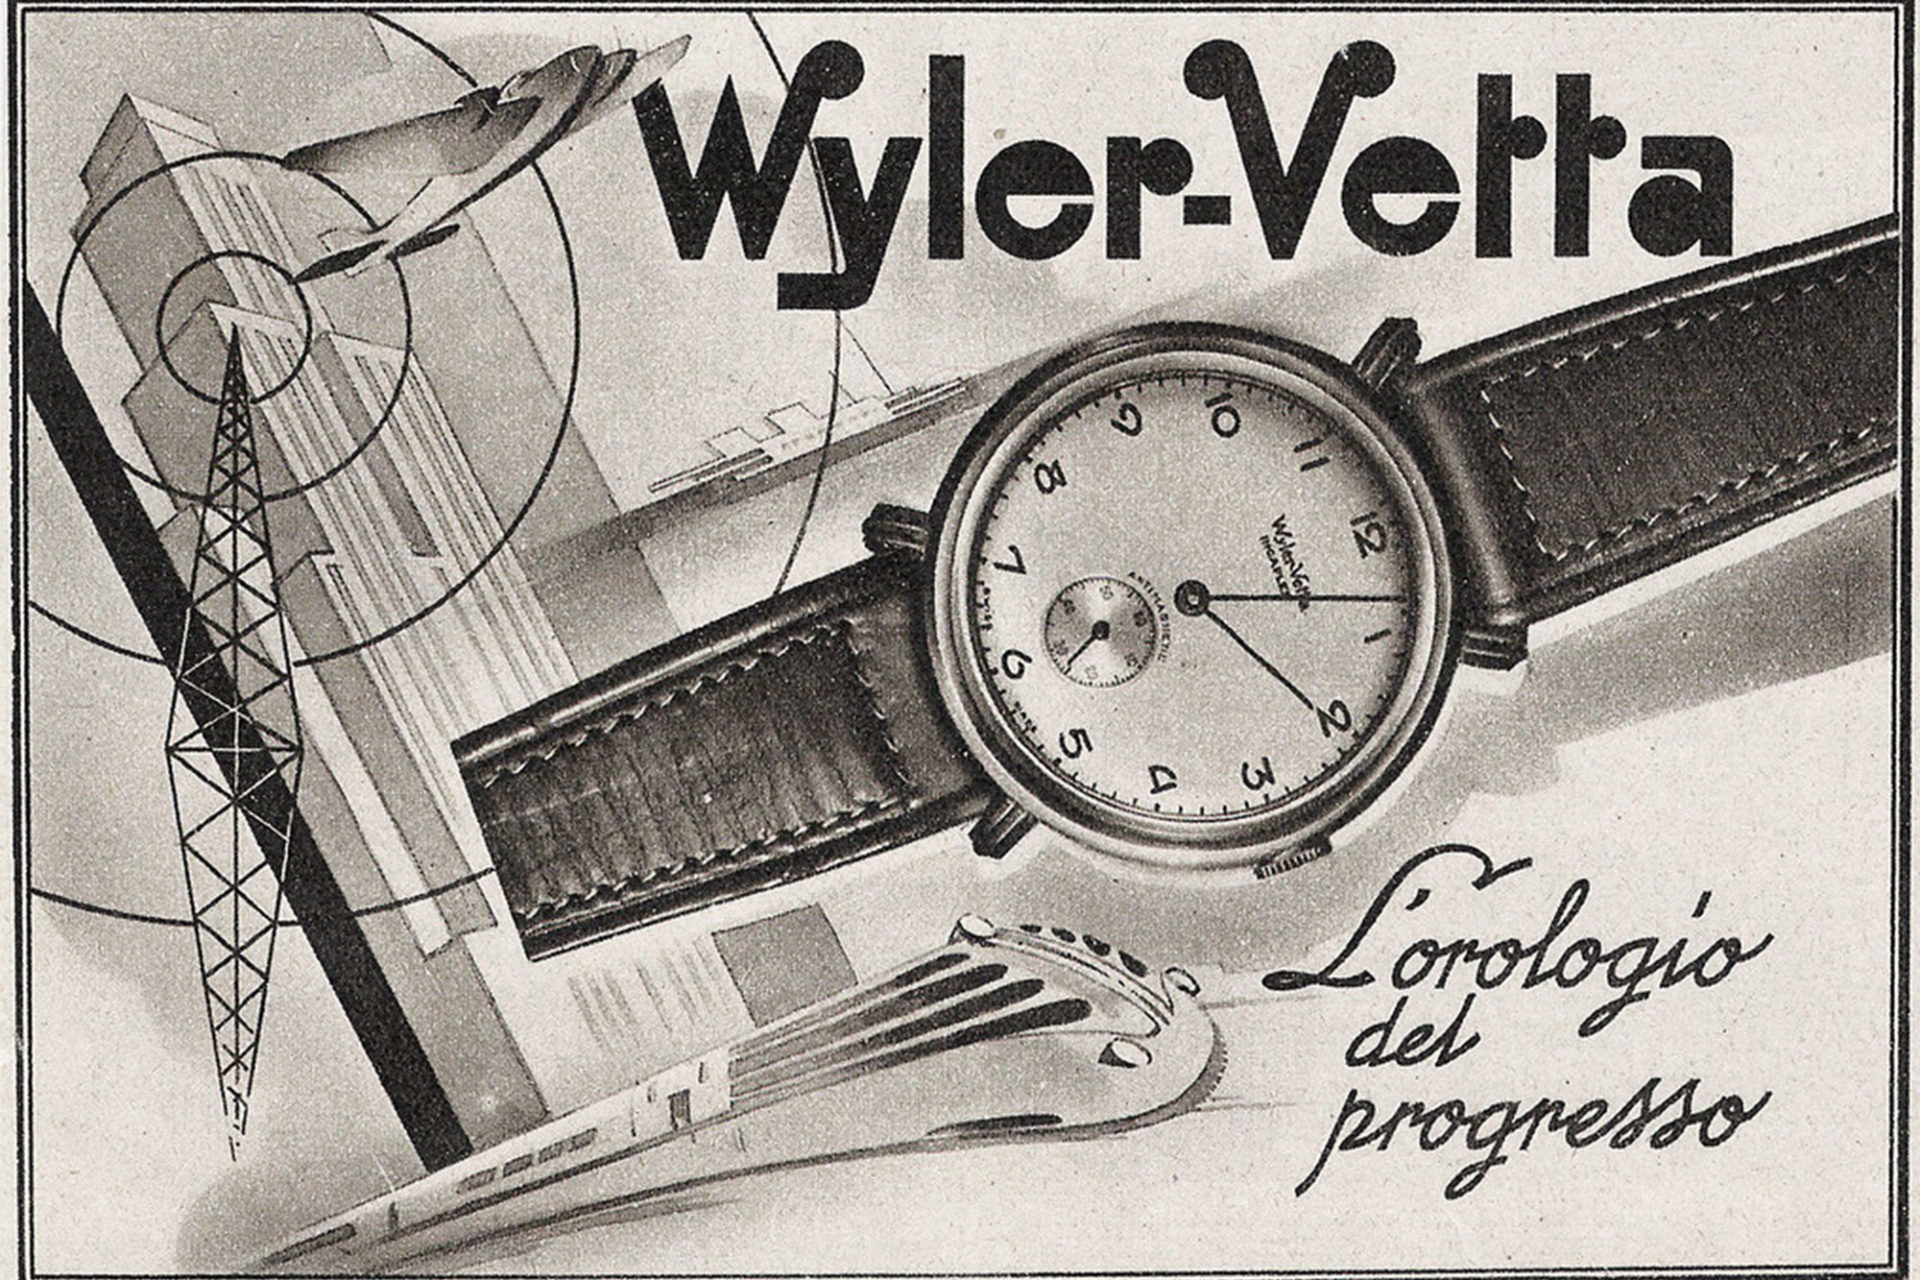 Publicité Wyler Vetta